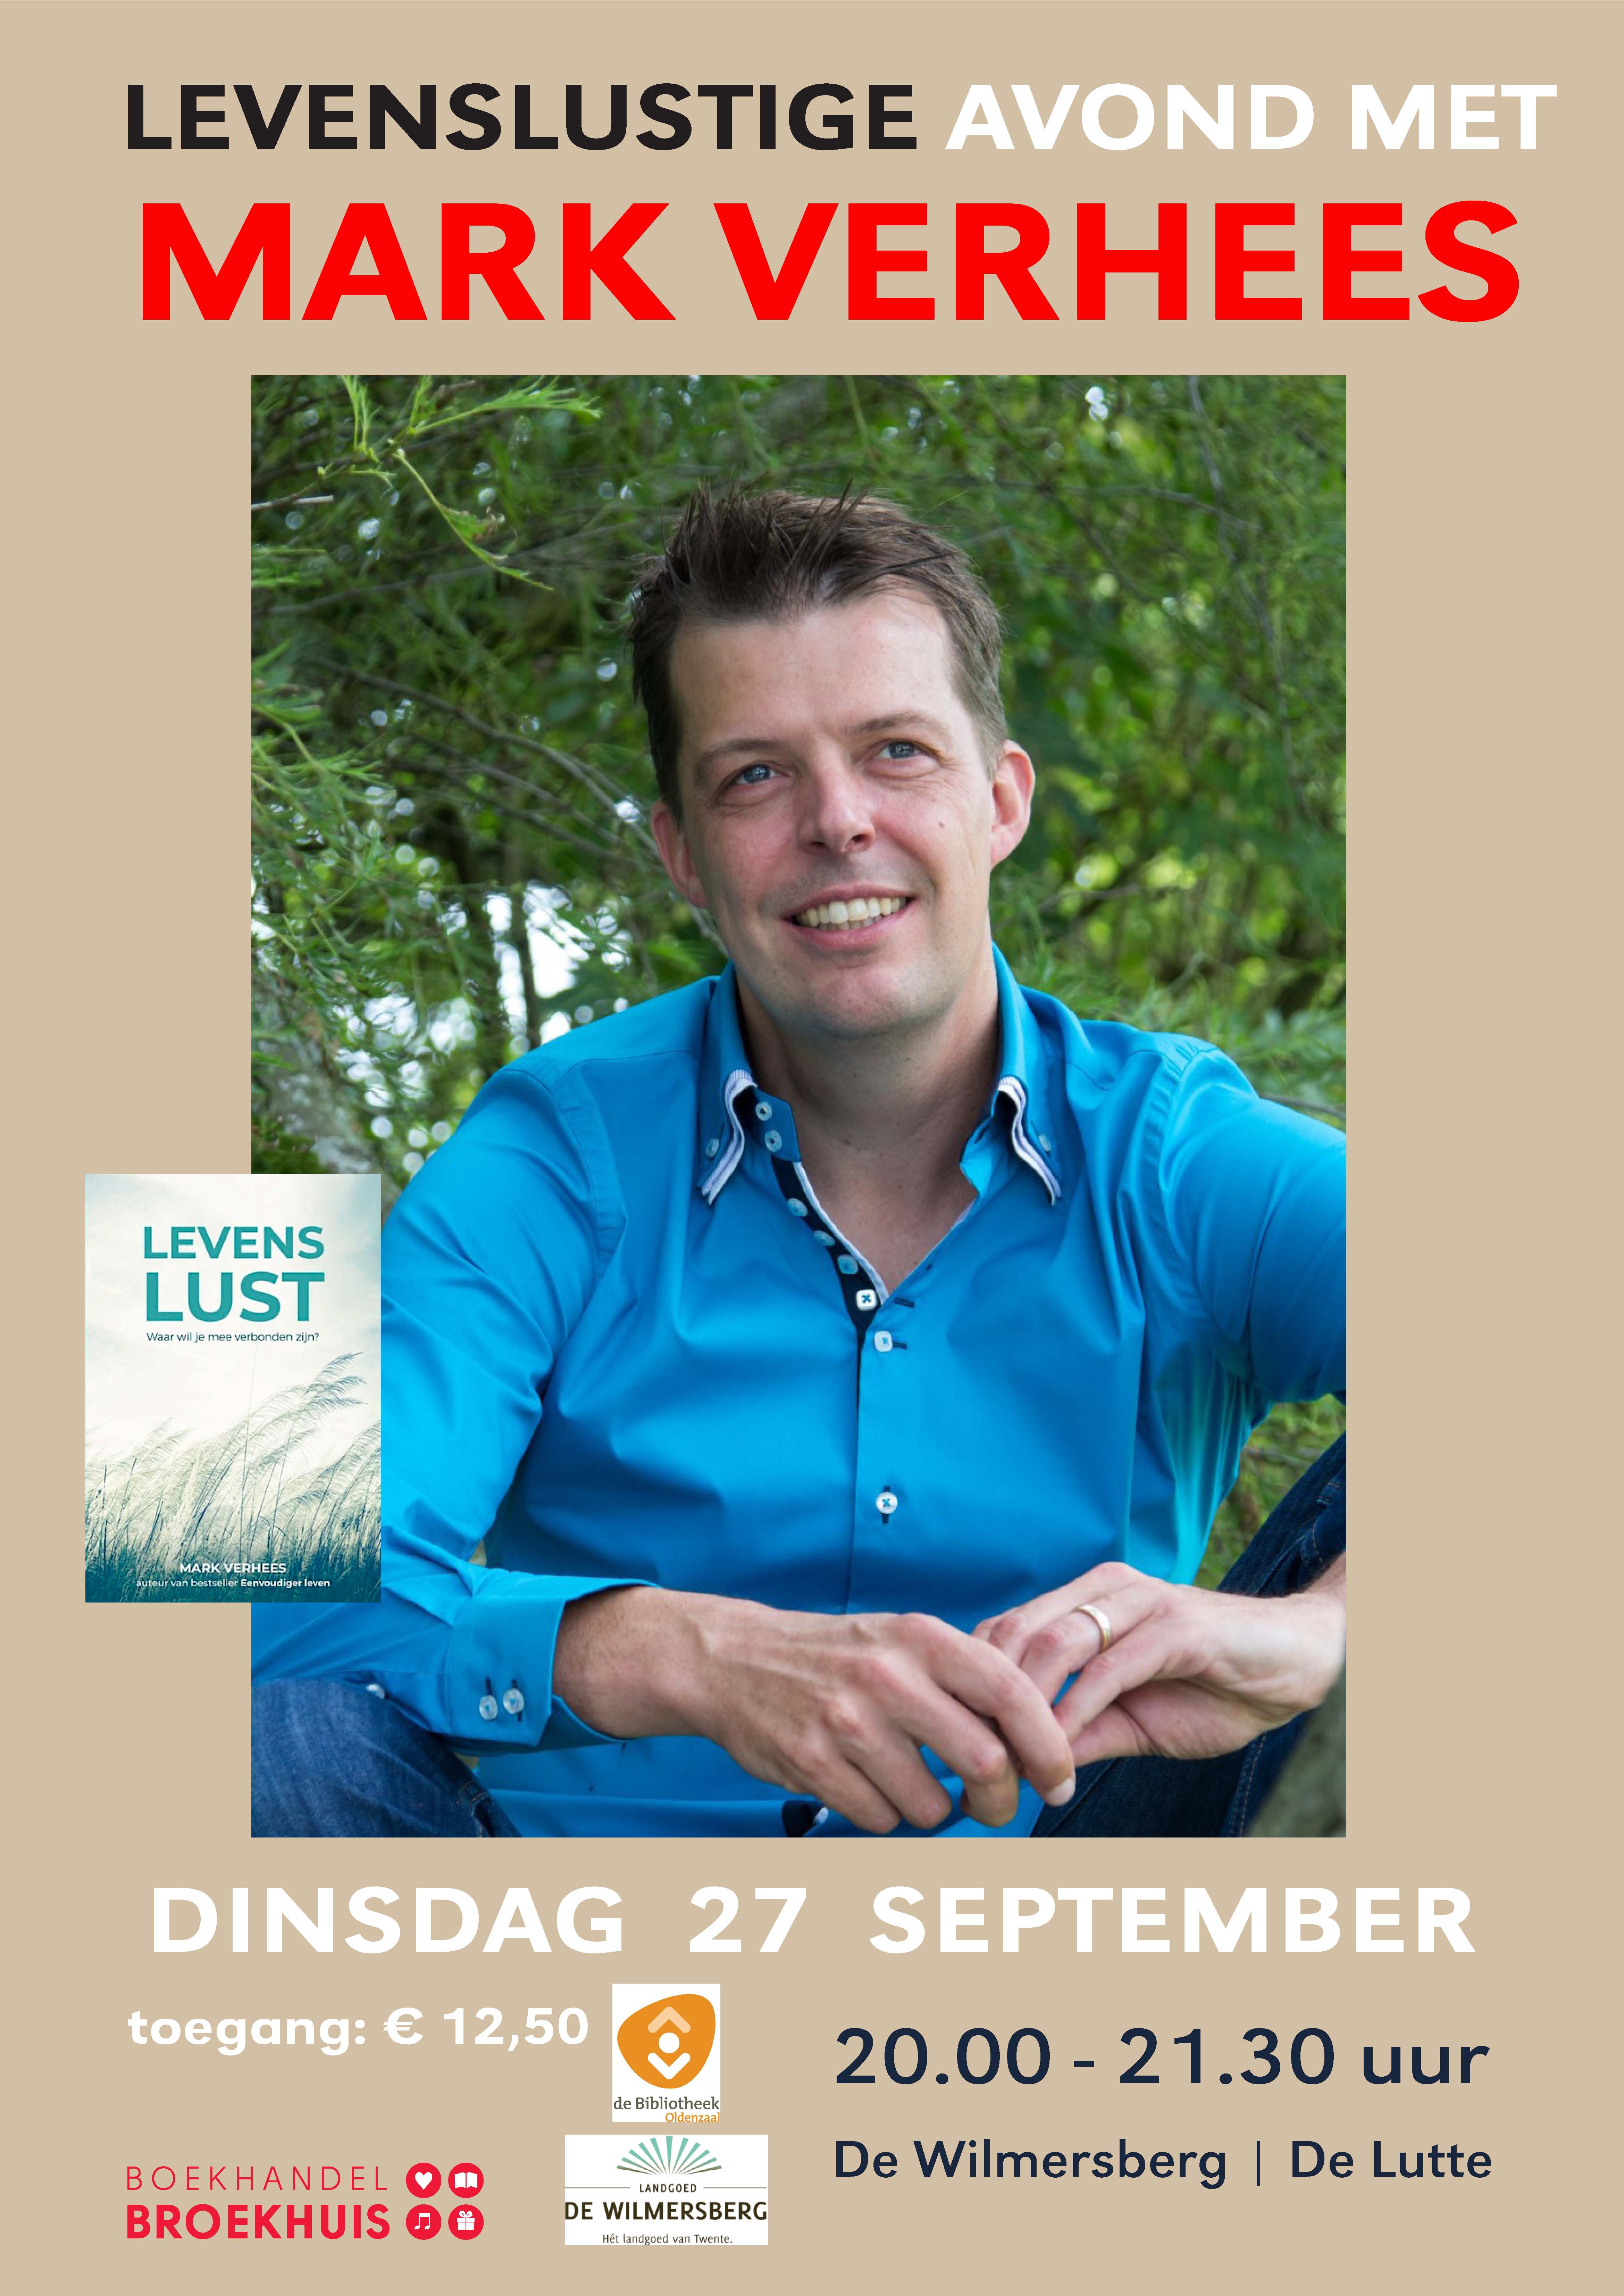 Een avond met Mark Verhees in Landgoed De Wilmersberg op 27 september